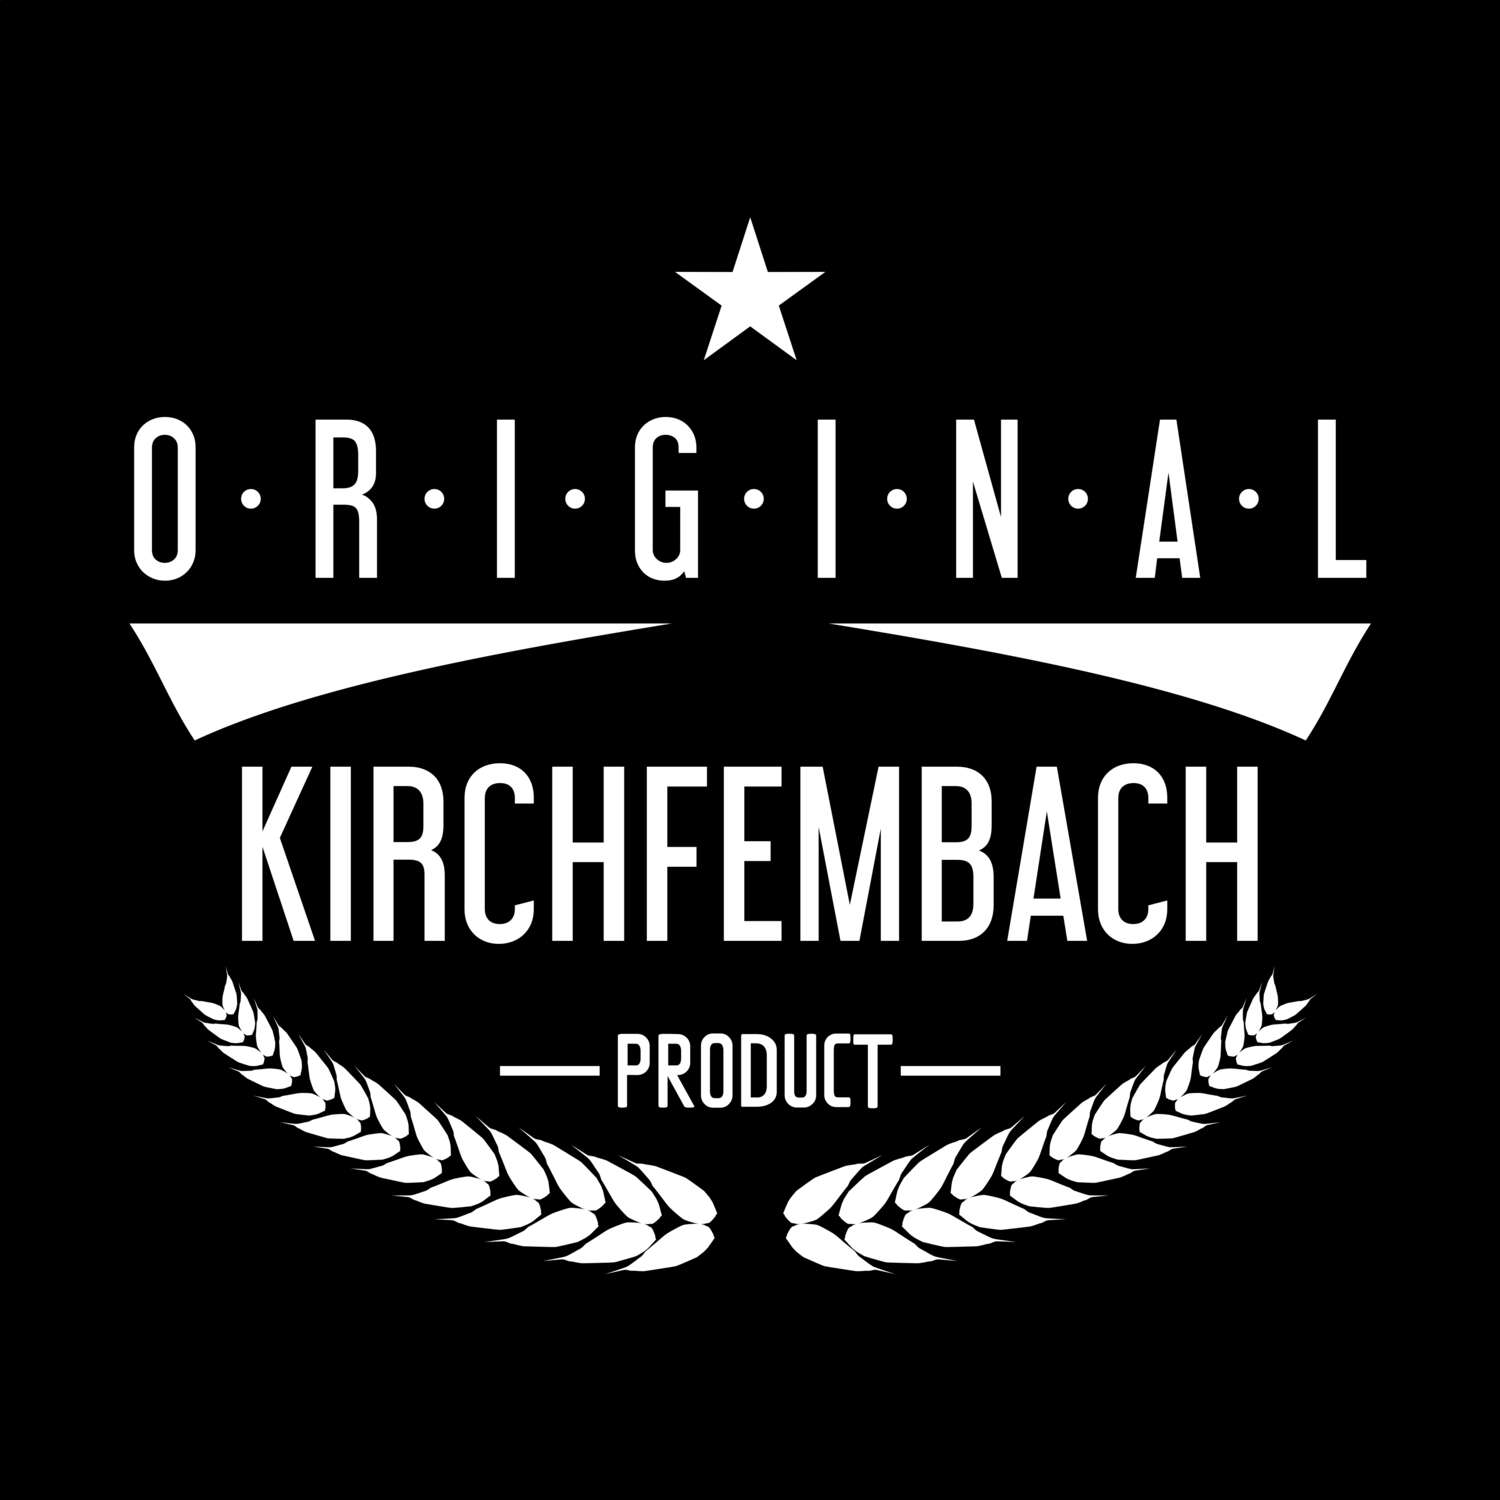 Kirchfembach T-Shirt »Original Product«